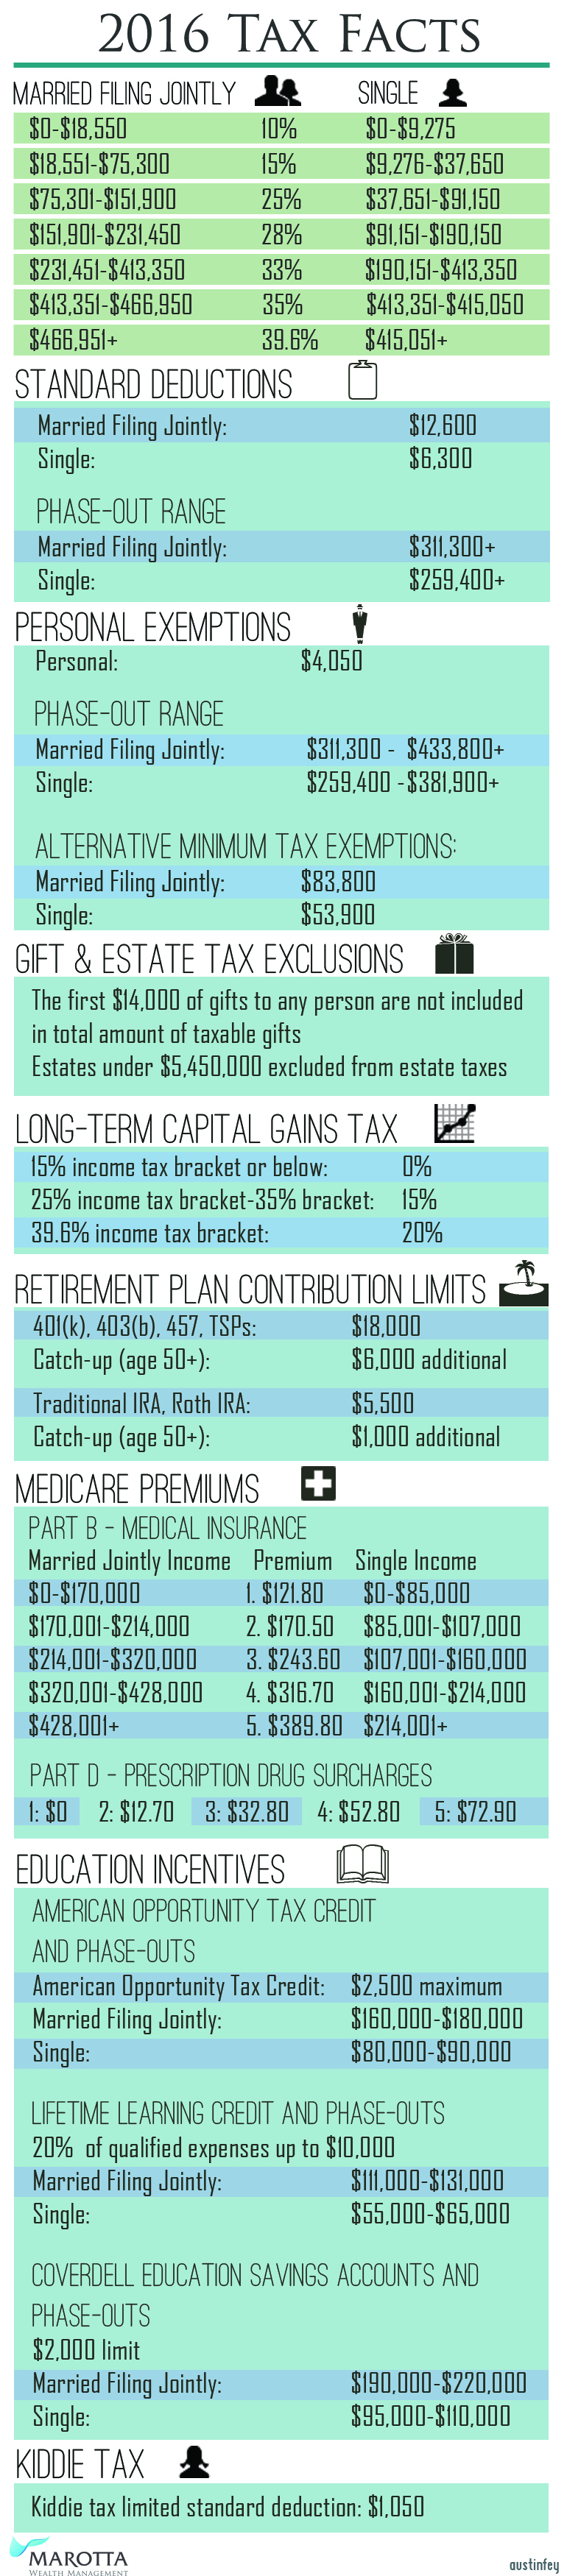 2016 Tax Tables